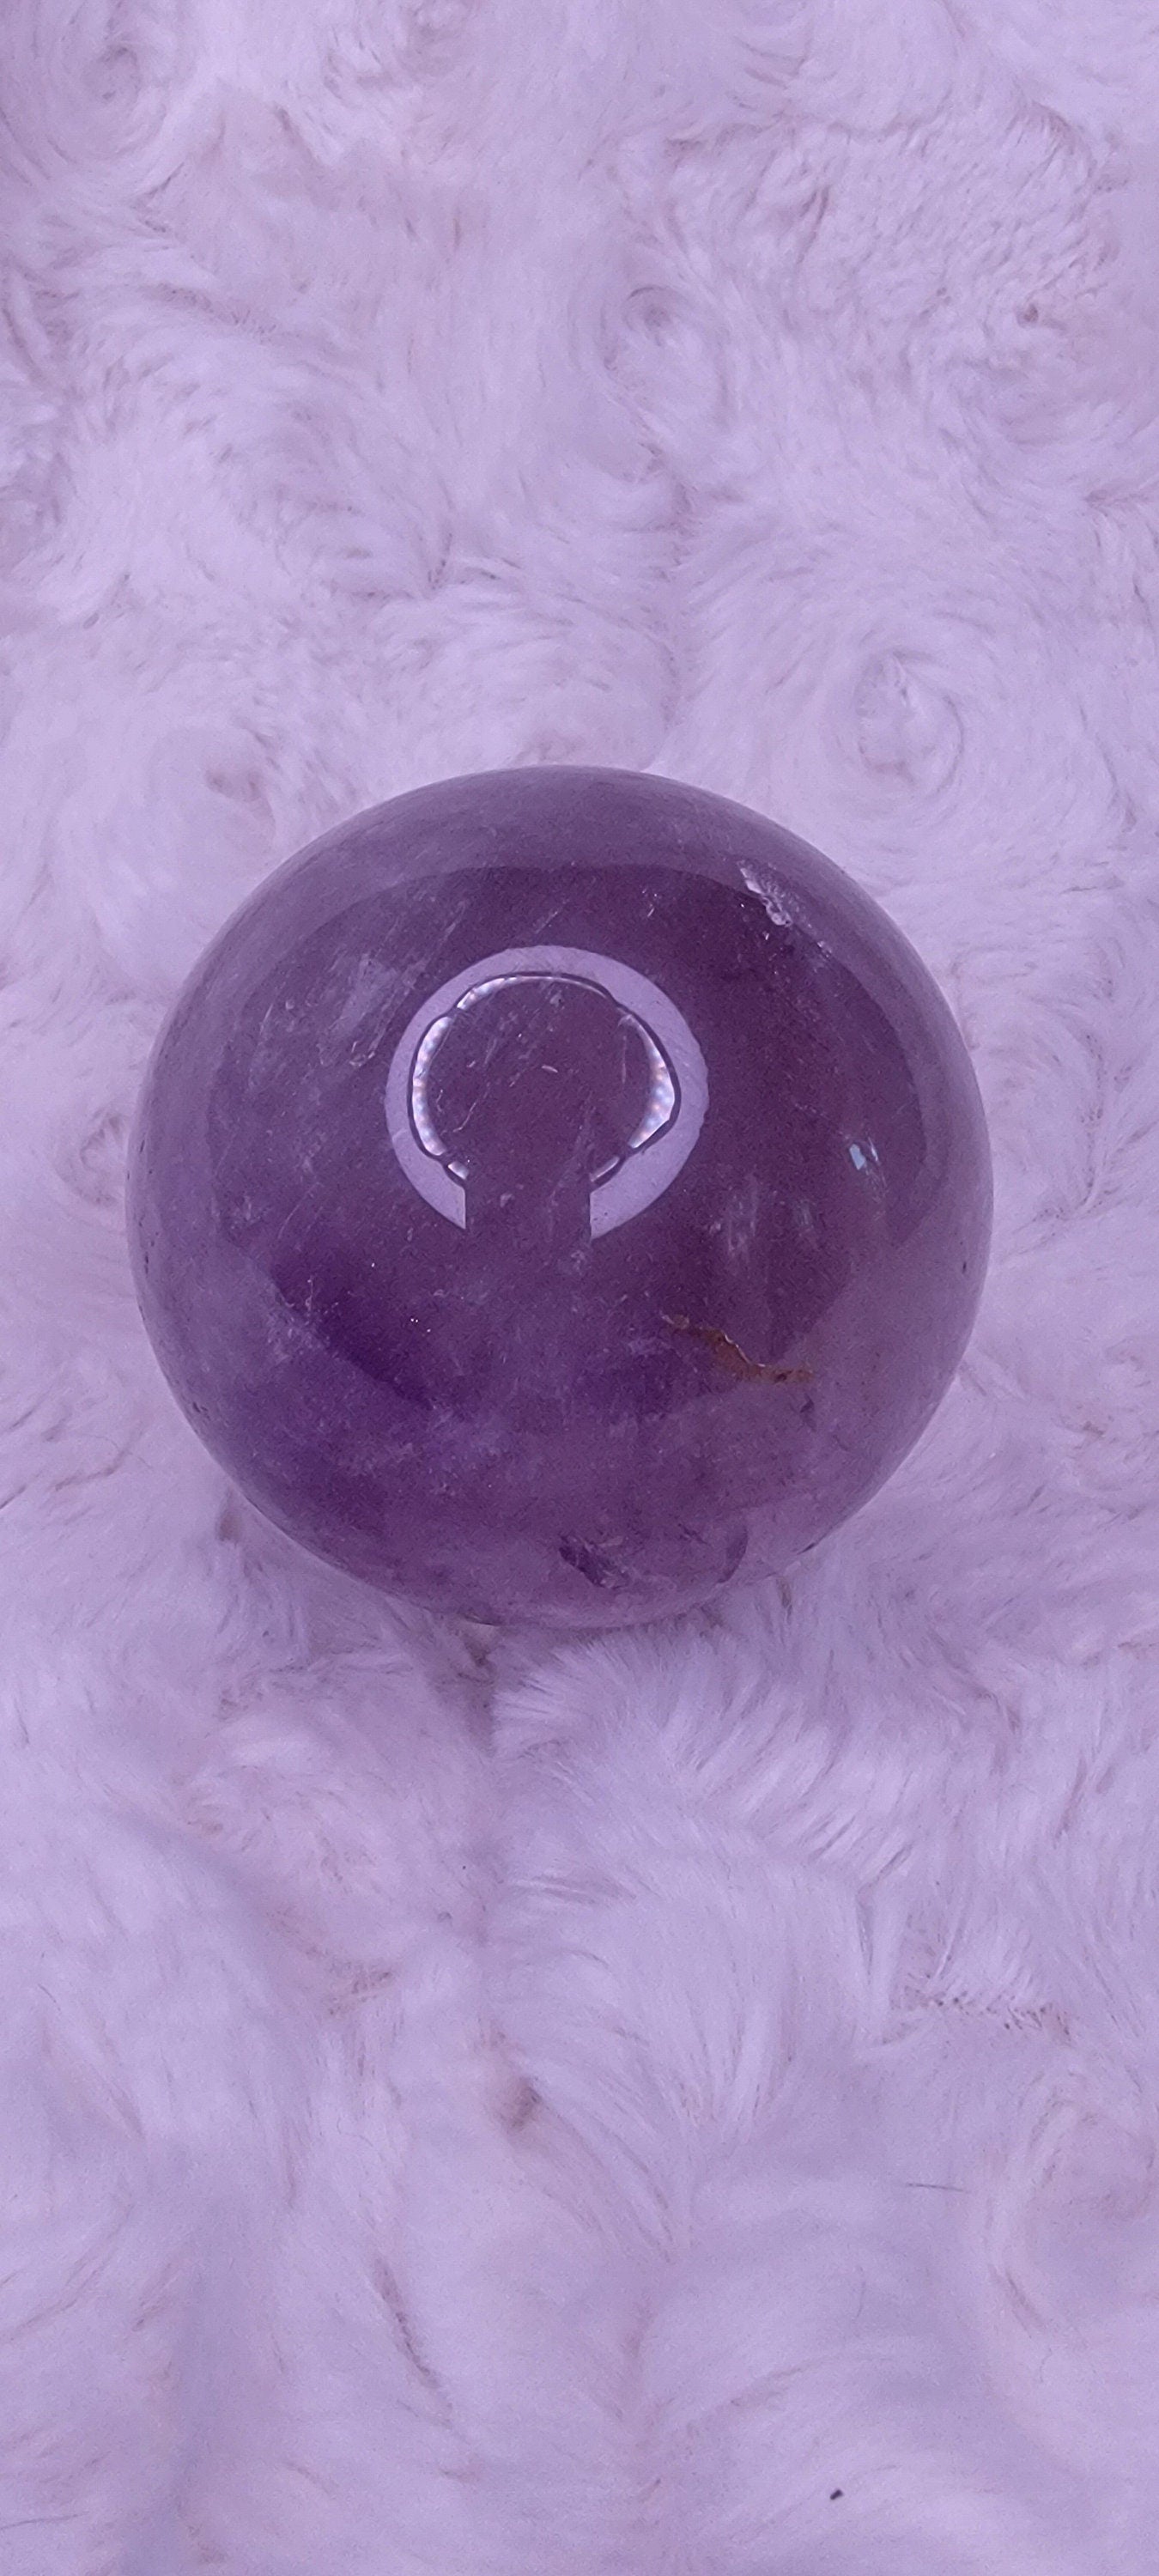 Amethyst Sphere